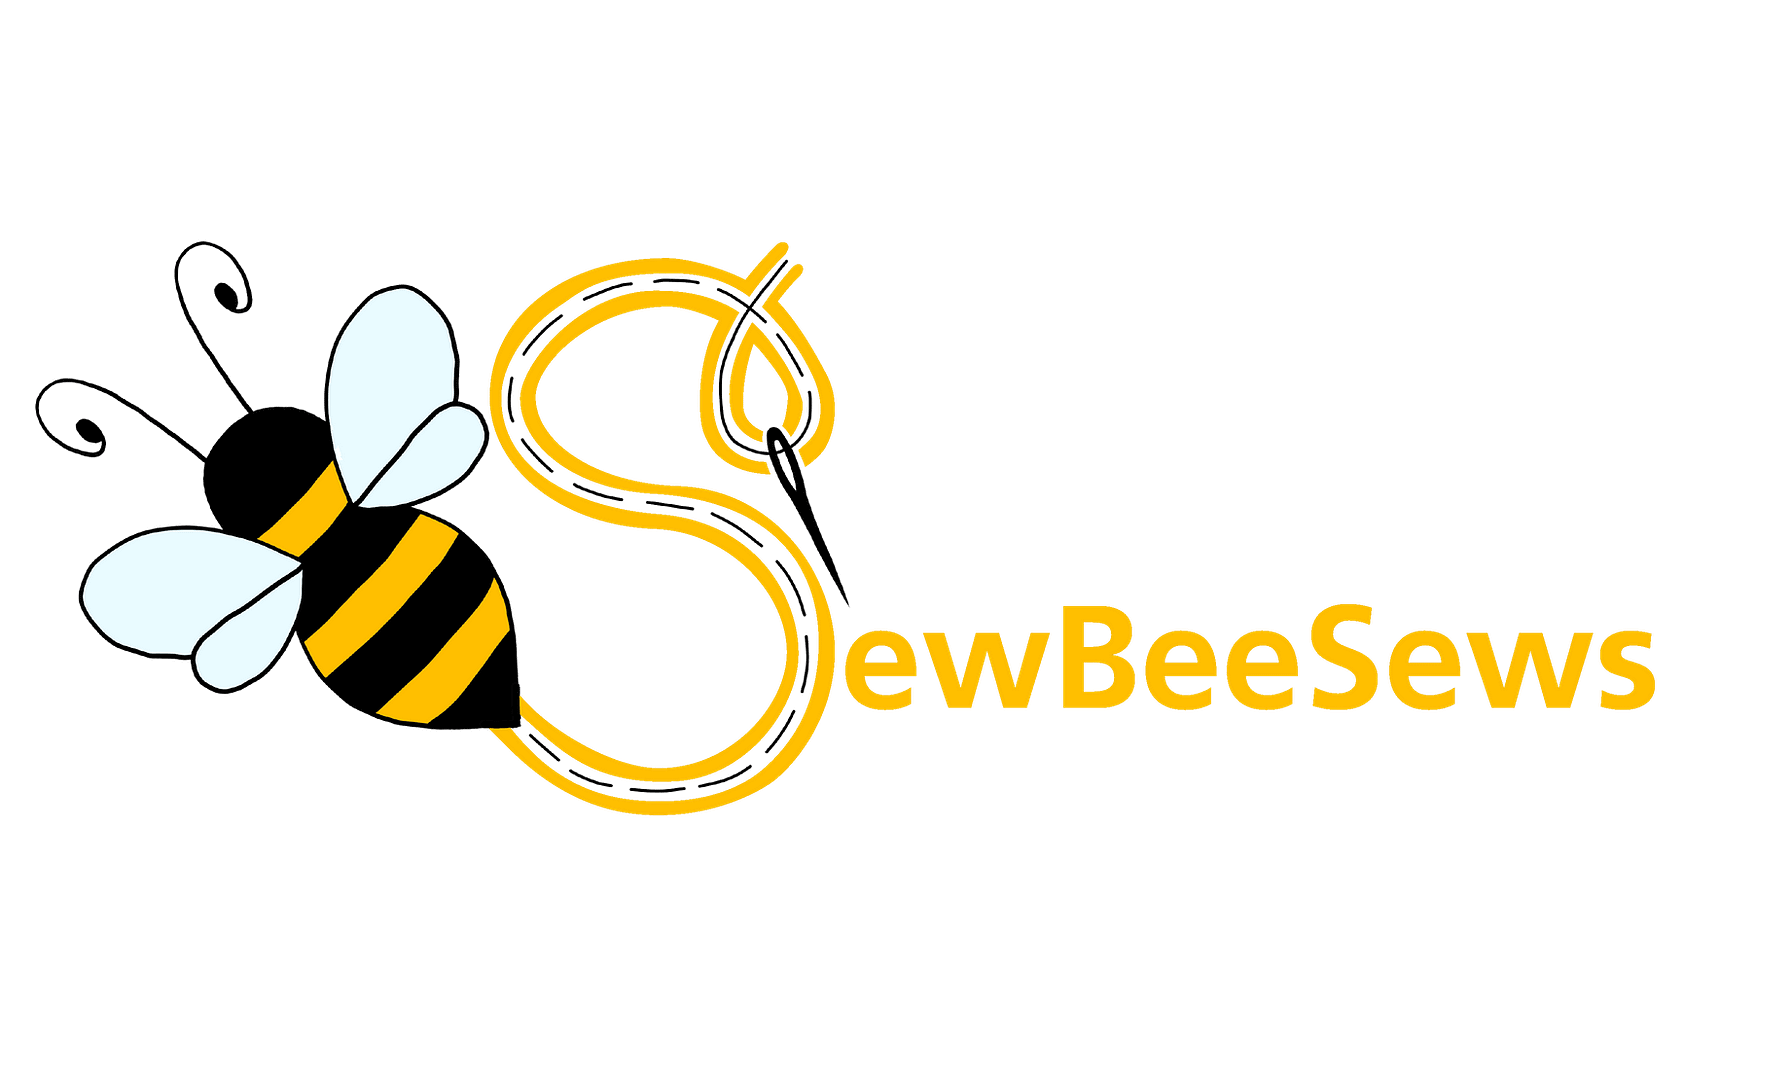 SewBeeSews